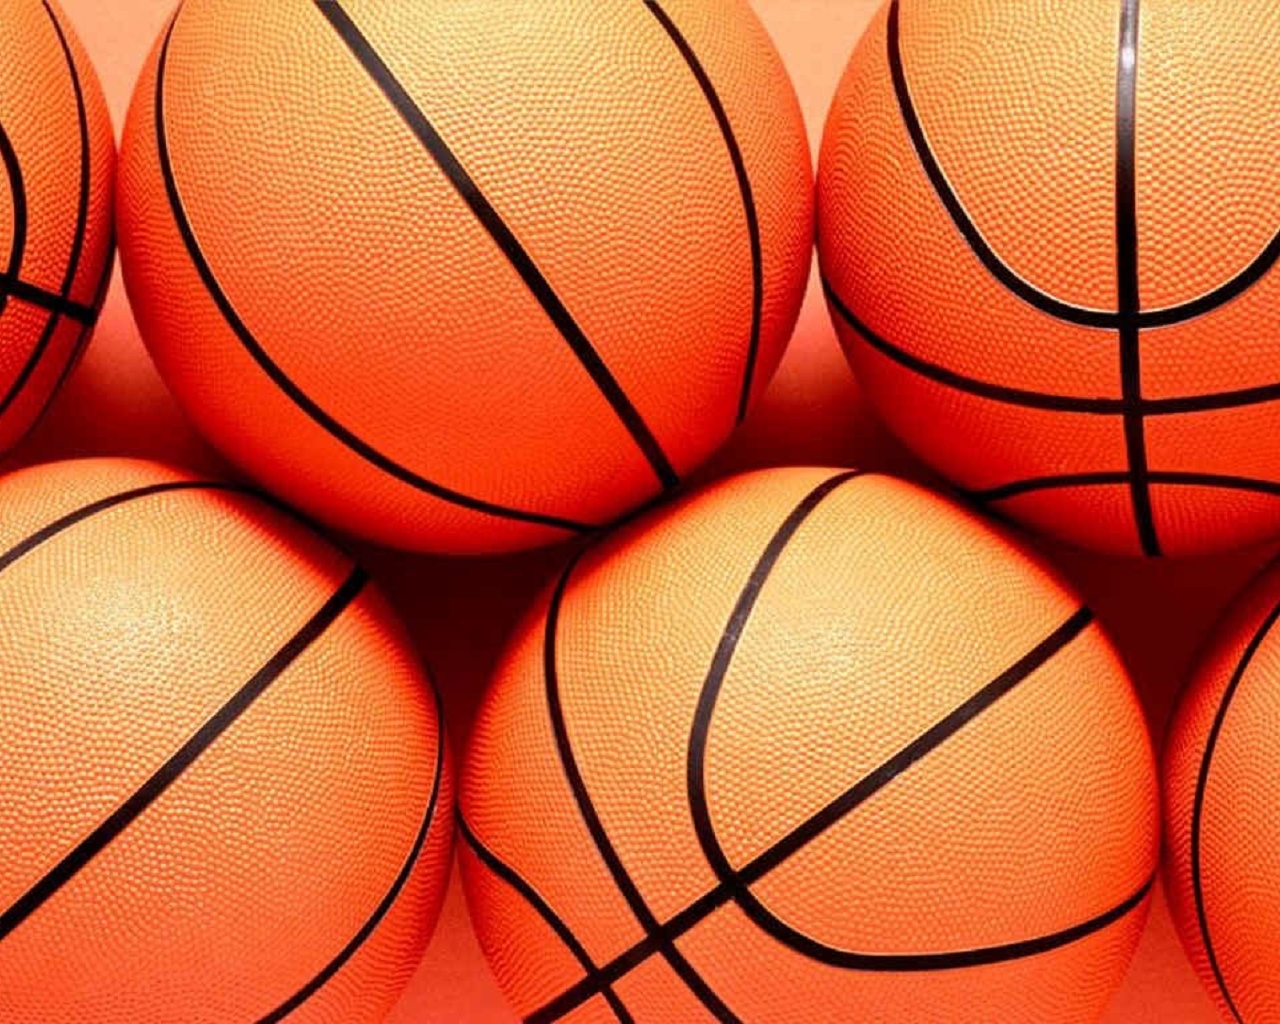 Спорт Баскетбол мячи, баскетбольные, оранжевые, полоски обои рабочий стол